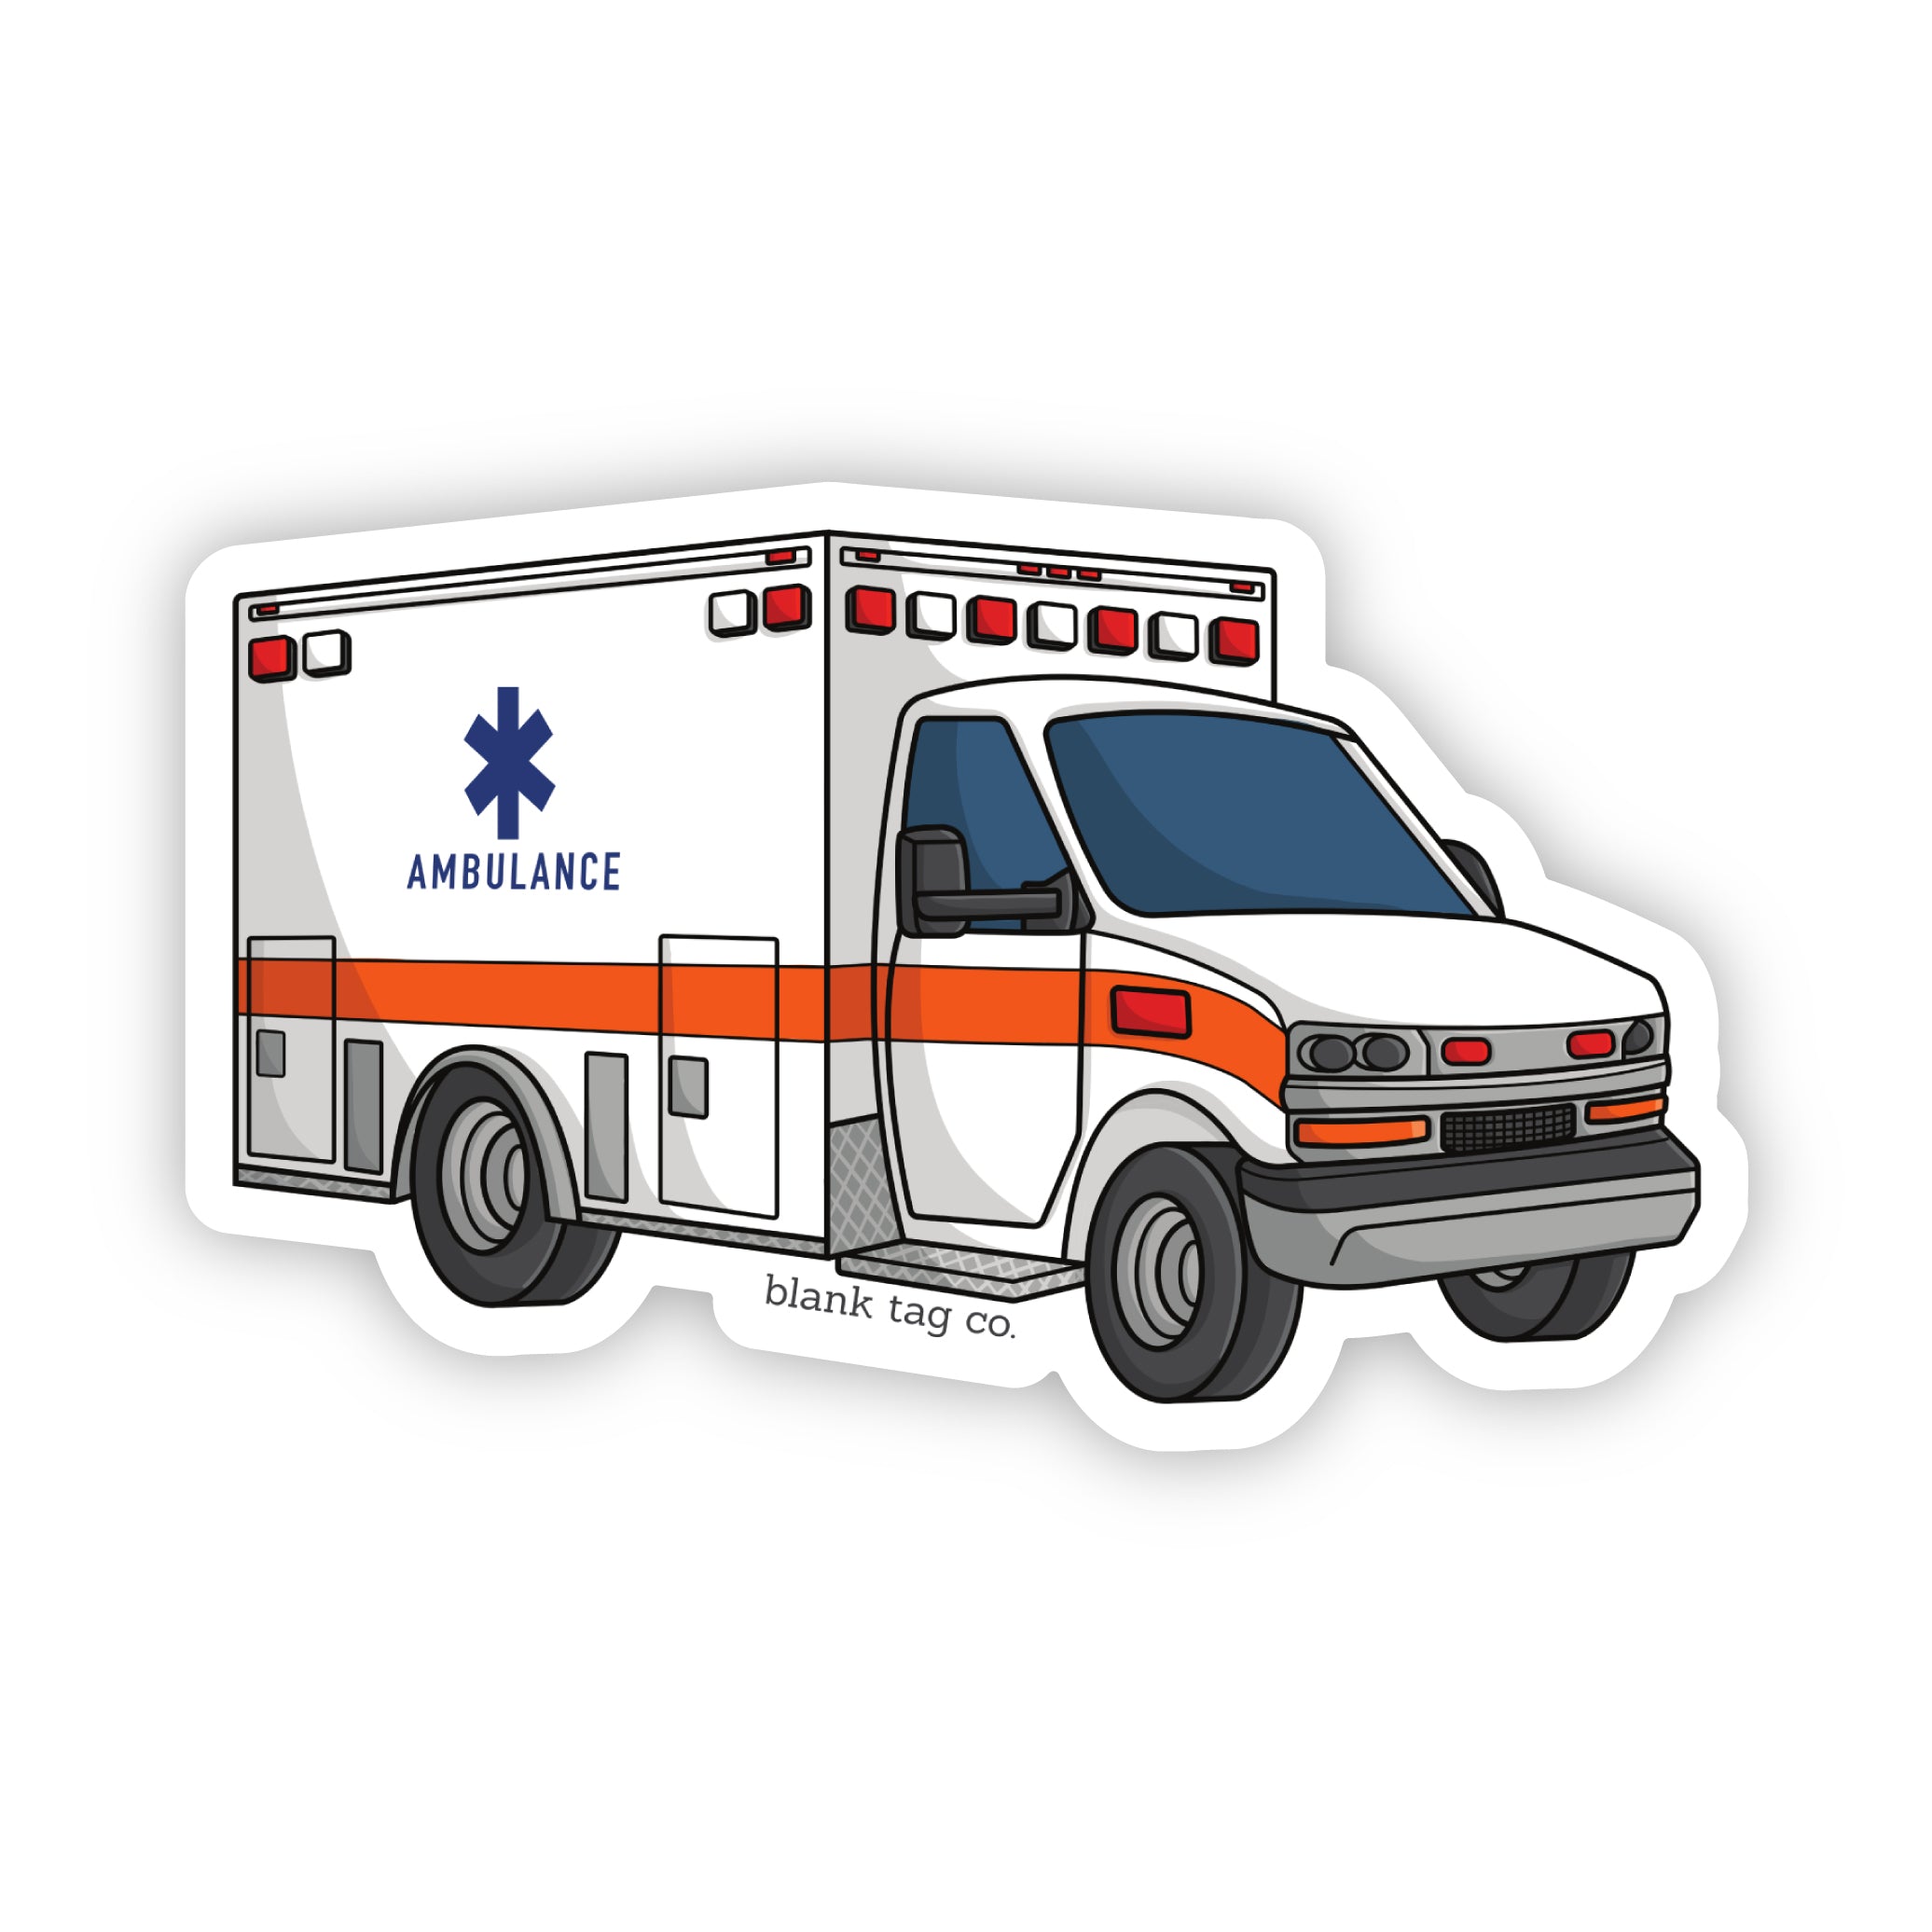 The Ambulance Sticker